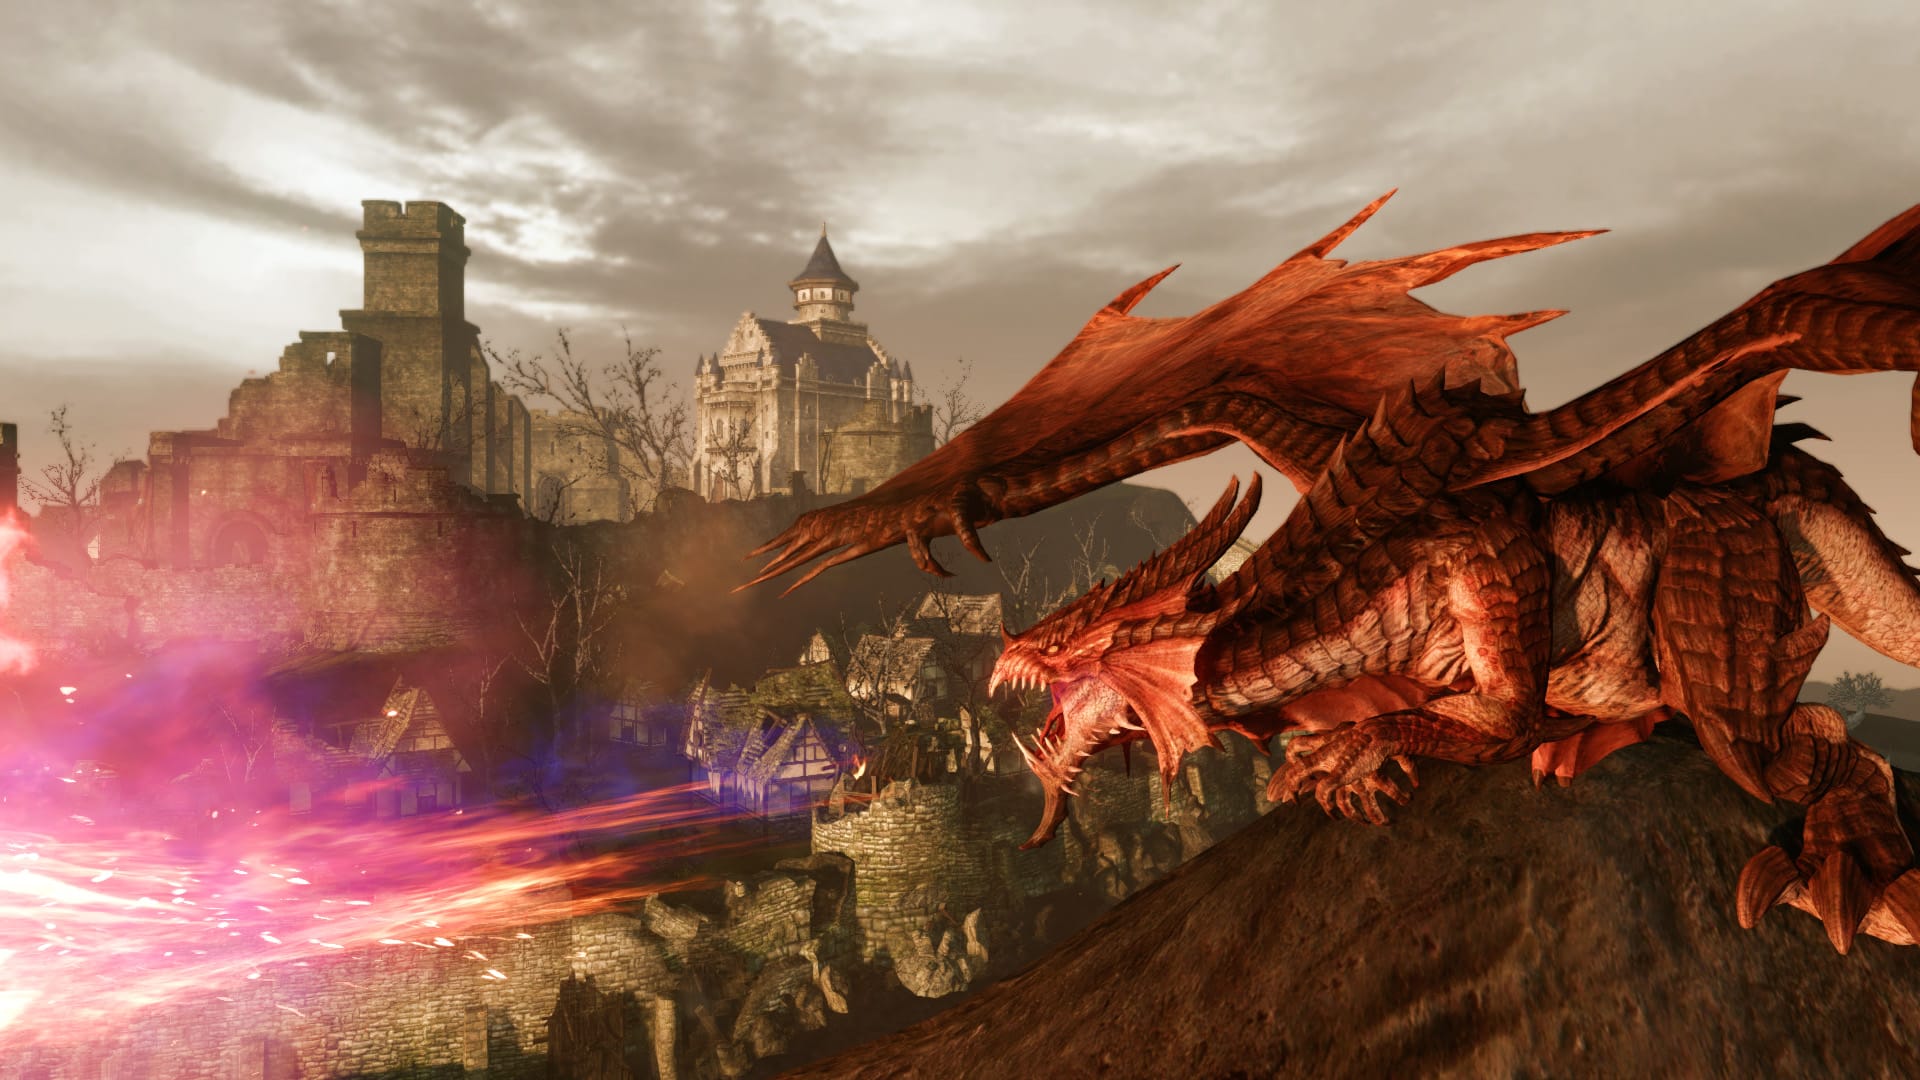 เกม MMORPG ที่ดีที่สุด: Arcehage ภาพแสดงมังกรใกล้เมือง